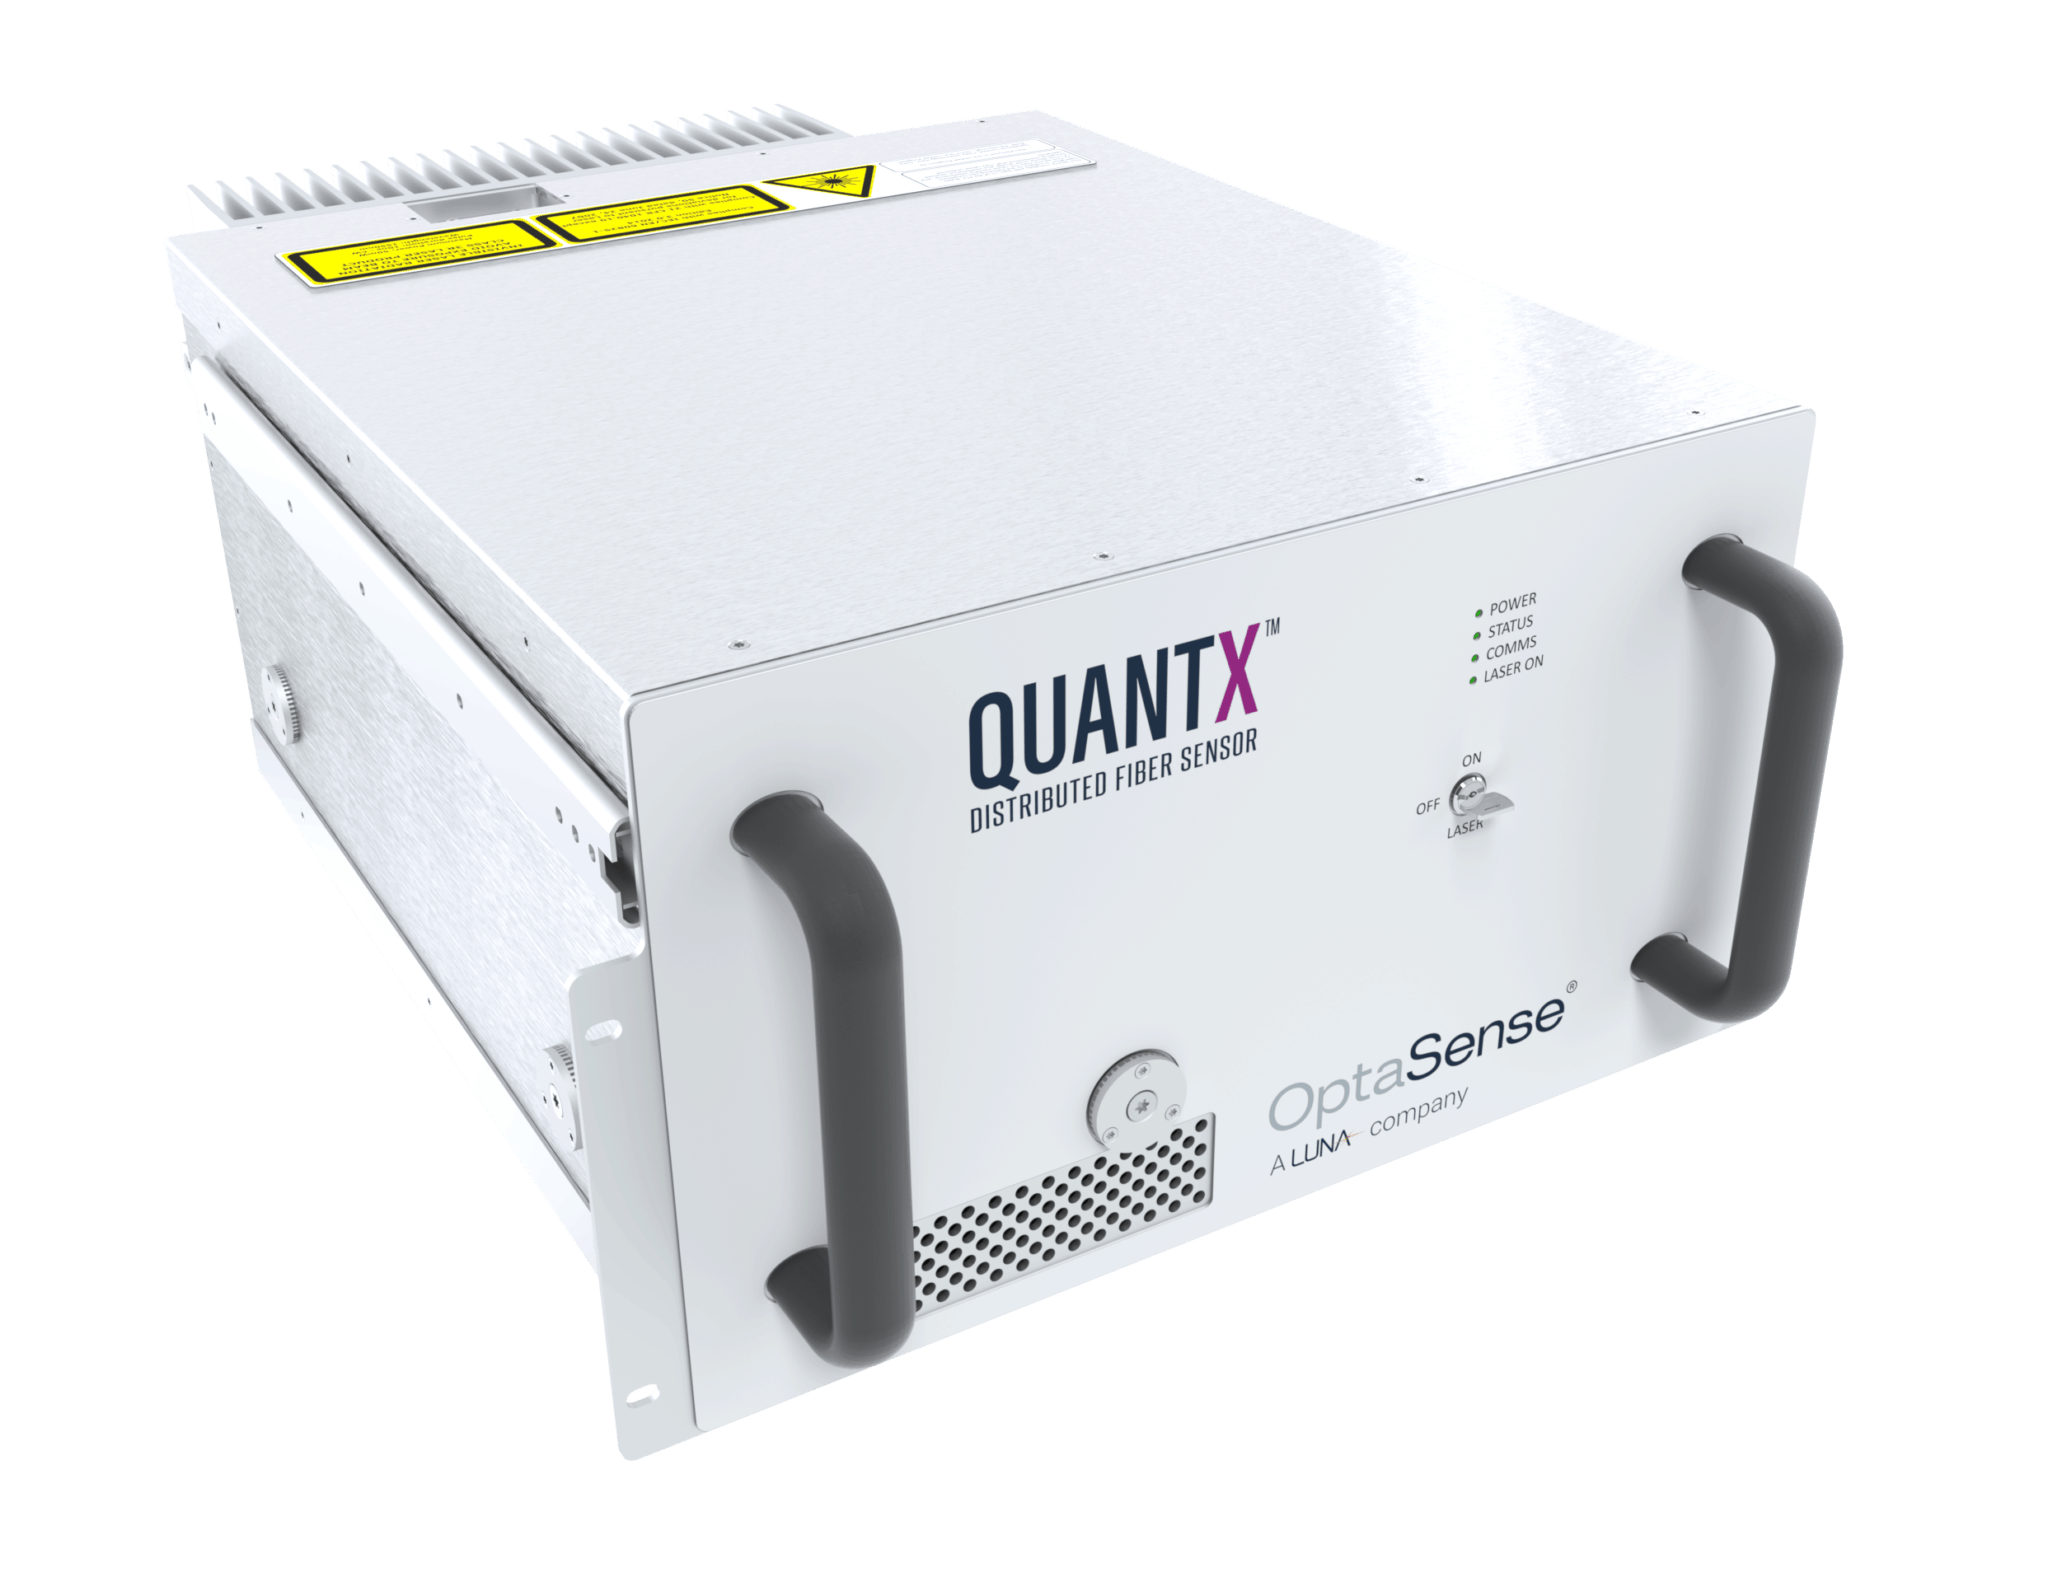 用于应变测量的Optasense Quantx